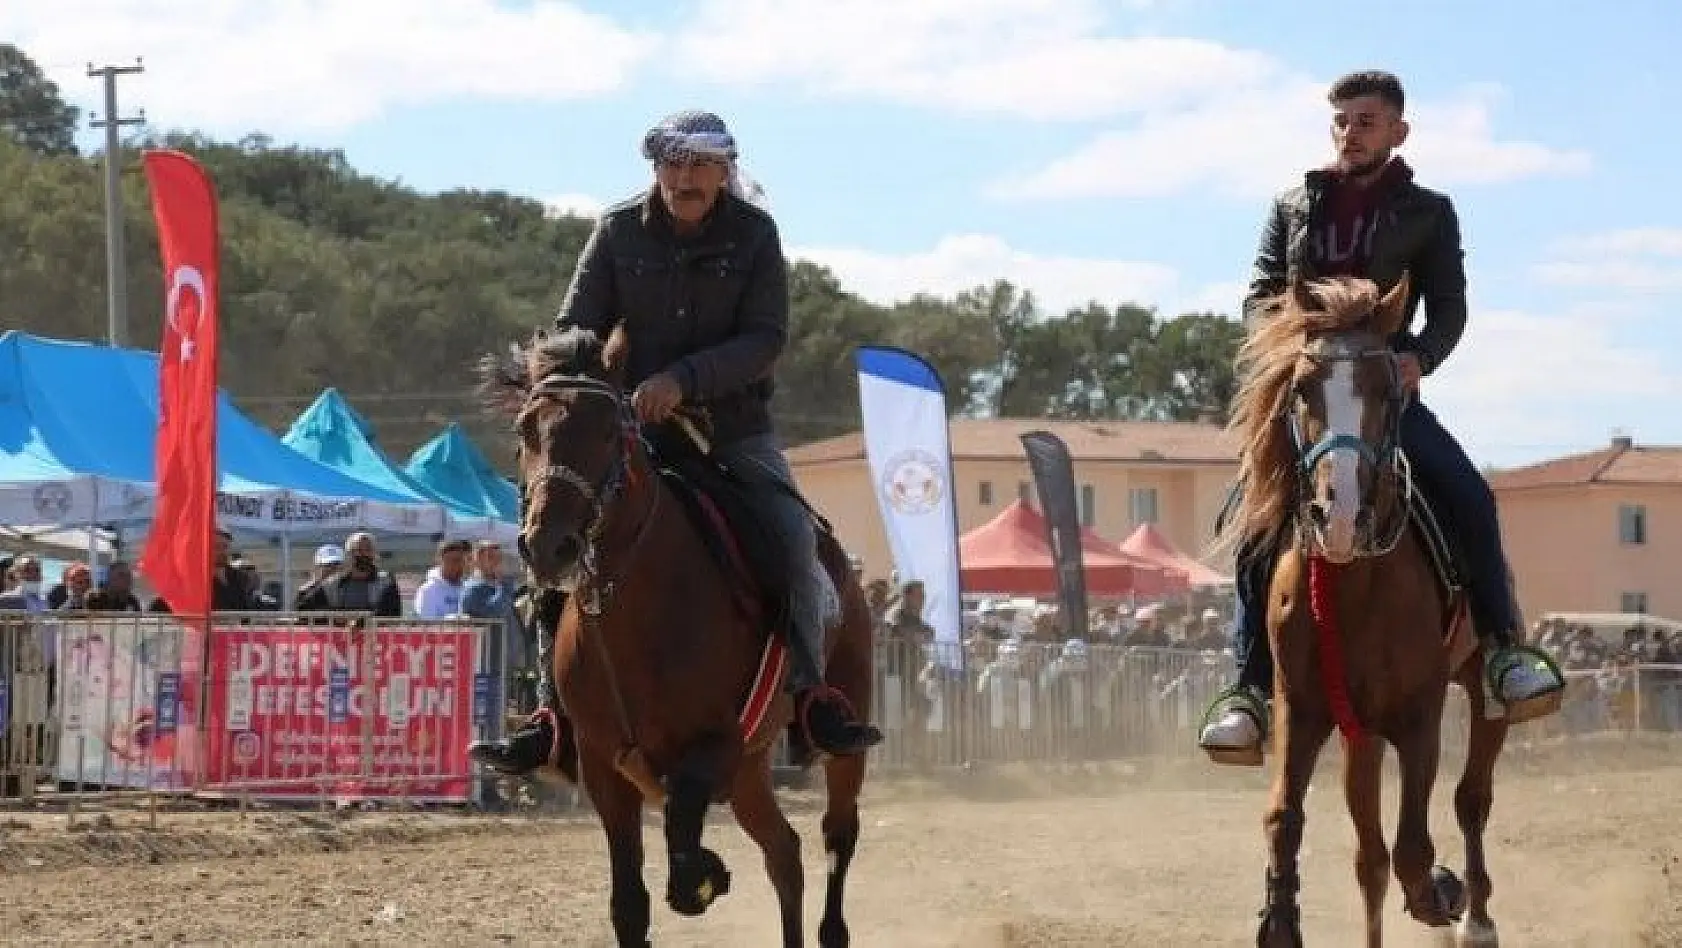 Rahvan at yarışları İvrindi'ye yakıştı